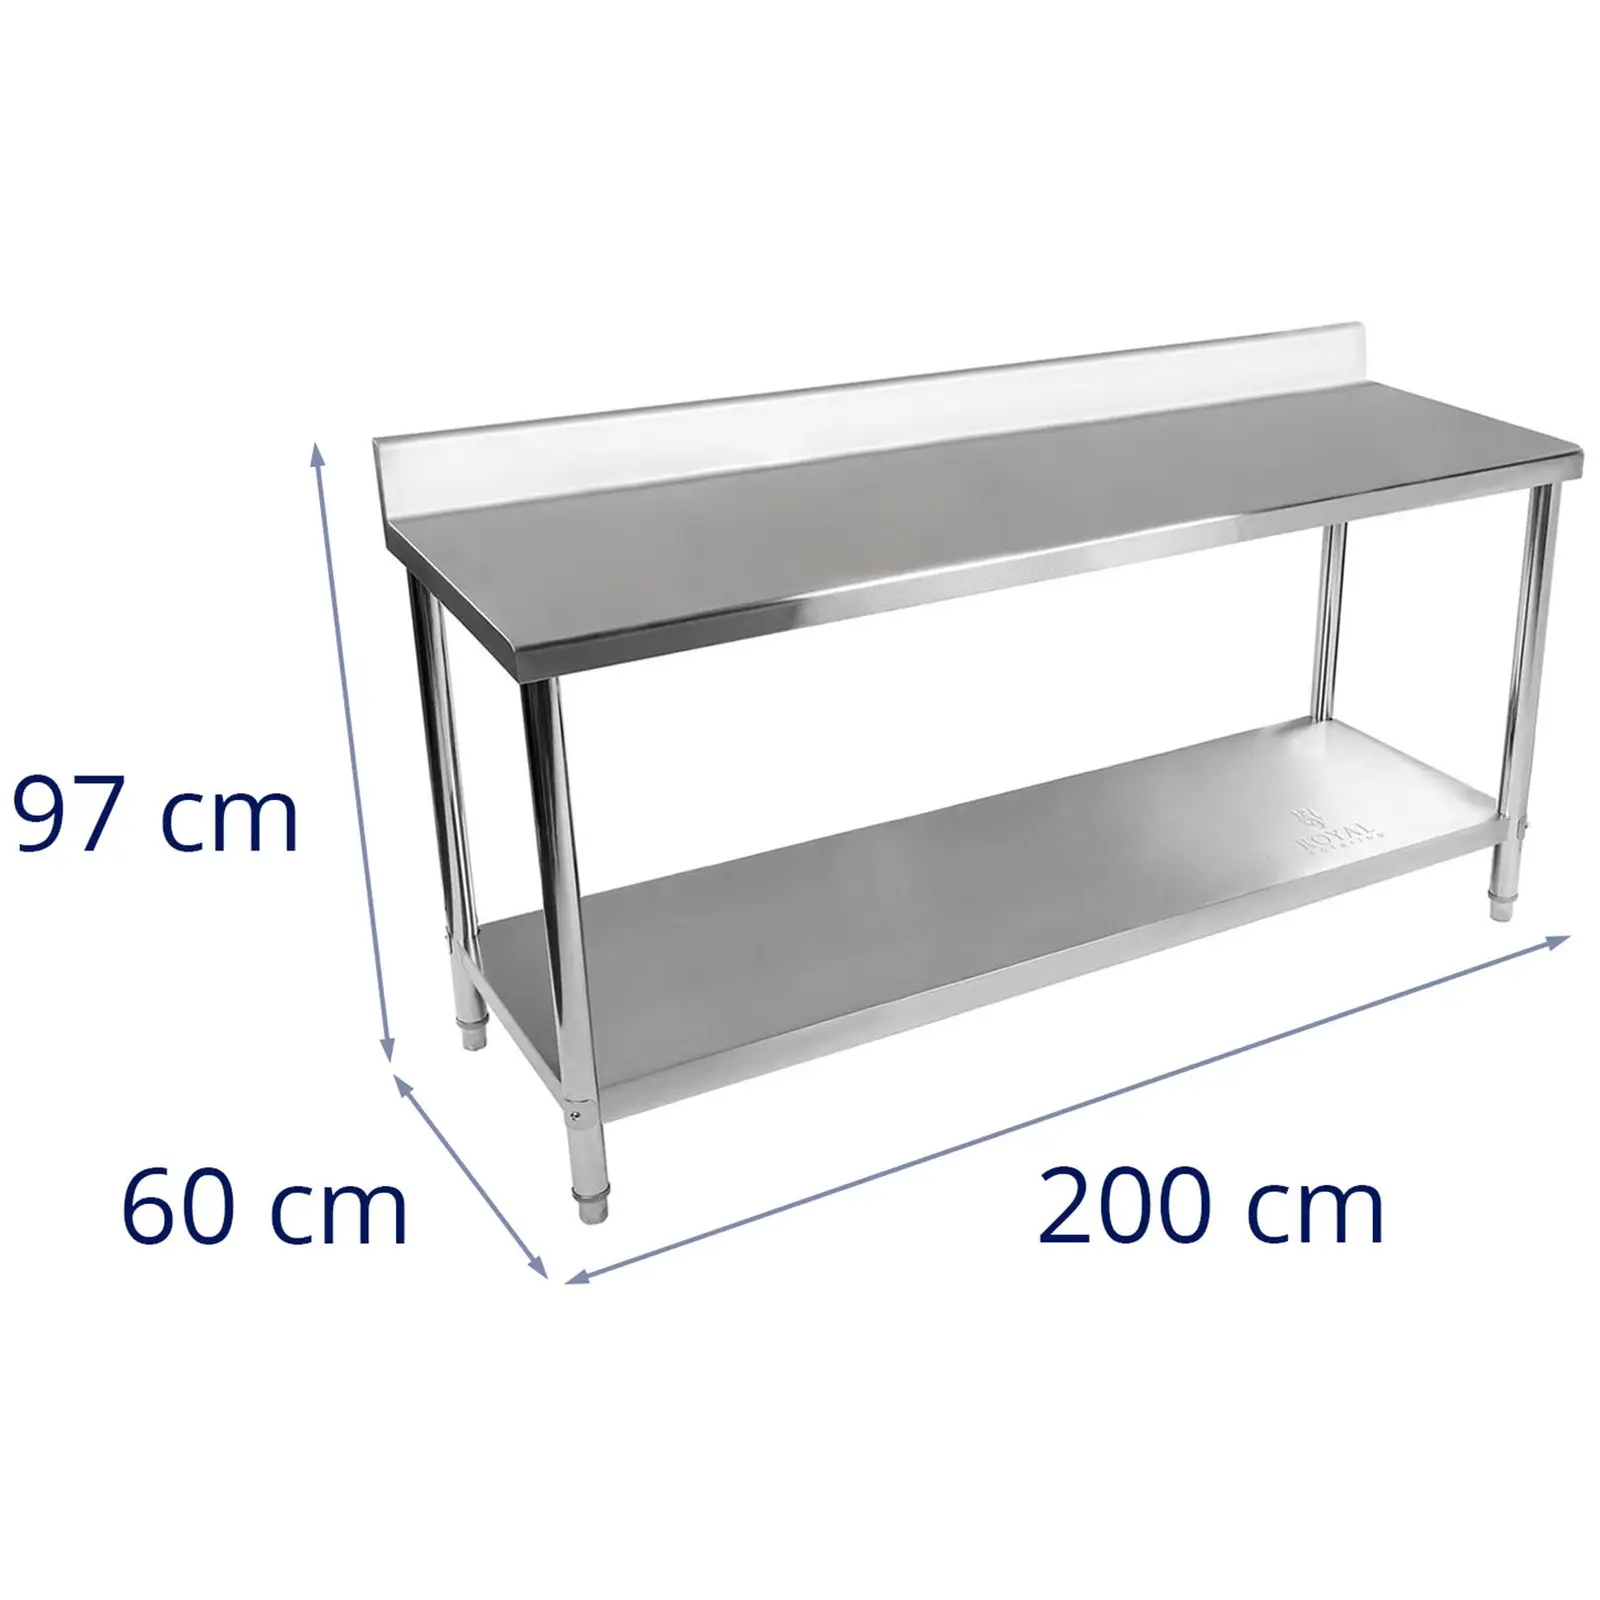 Table de travail en inox - 200 x 60 cm - Avec dosseret - Capacité de charge de 160 kg